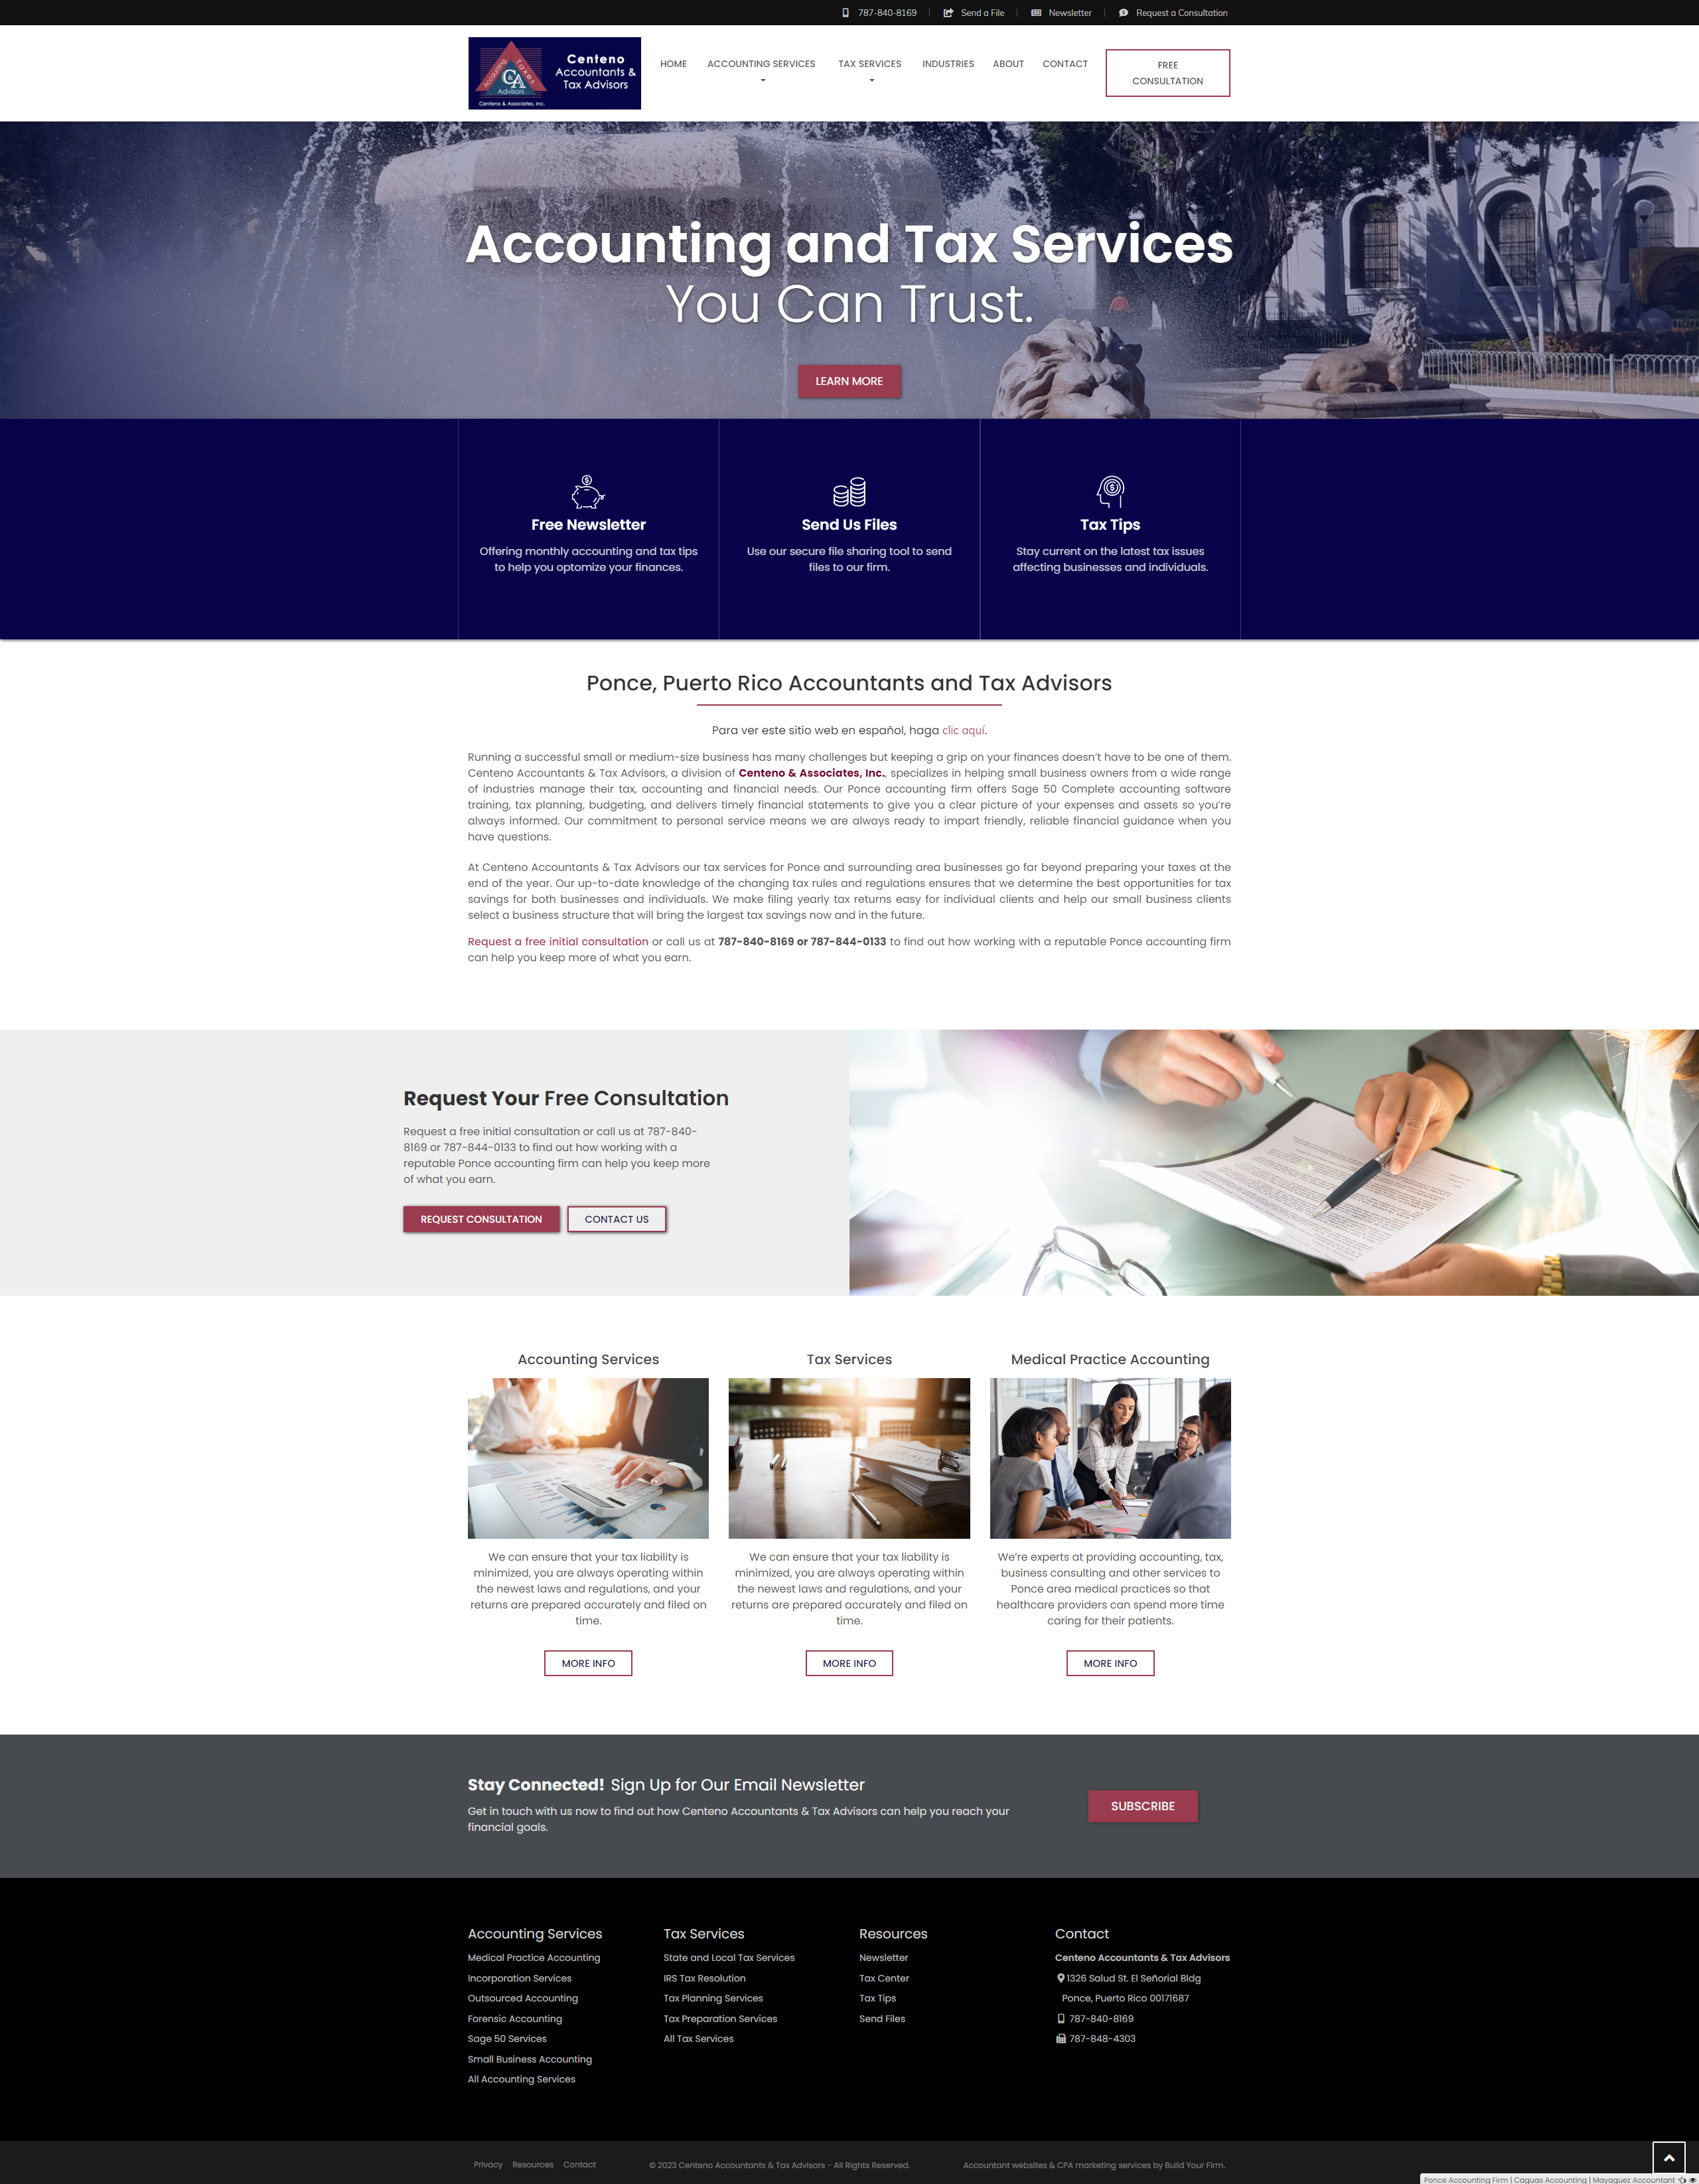 Website of Centeno Accountants & Tax Advisors